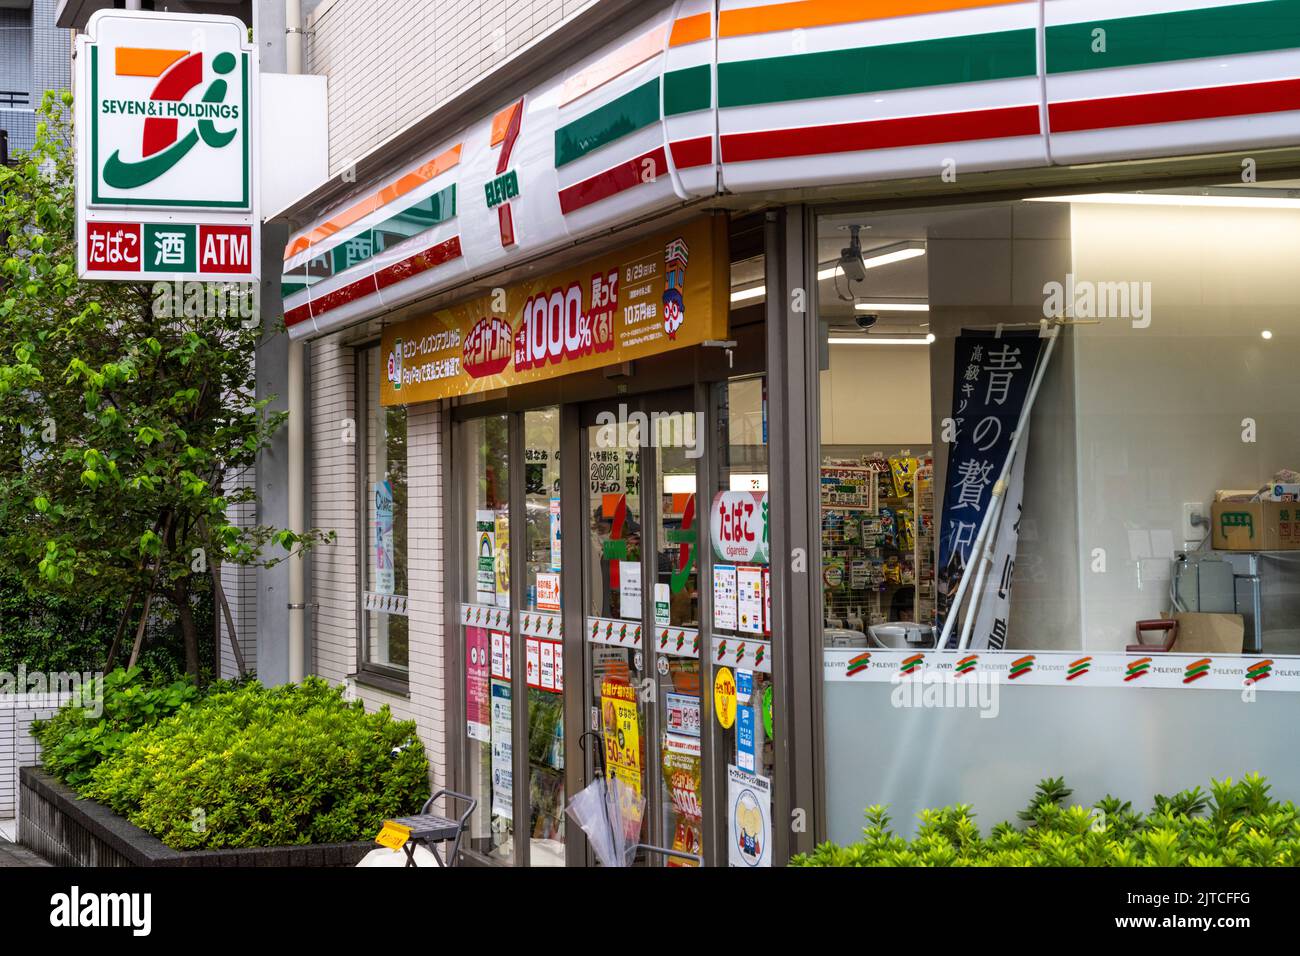 Ein 7-Eleven Store, eines von tausenden Convenience Stores in Tokio, Japan. Die 7-Eleven-Viertel Convenience Stores entstanden in Texas, wurden aber 1991 zu einem japanischen Unternehmen mit fast 79.000 Geschäften in 19 Ländern. Stockfoto